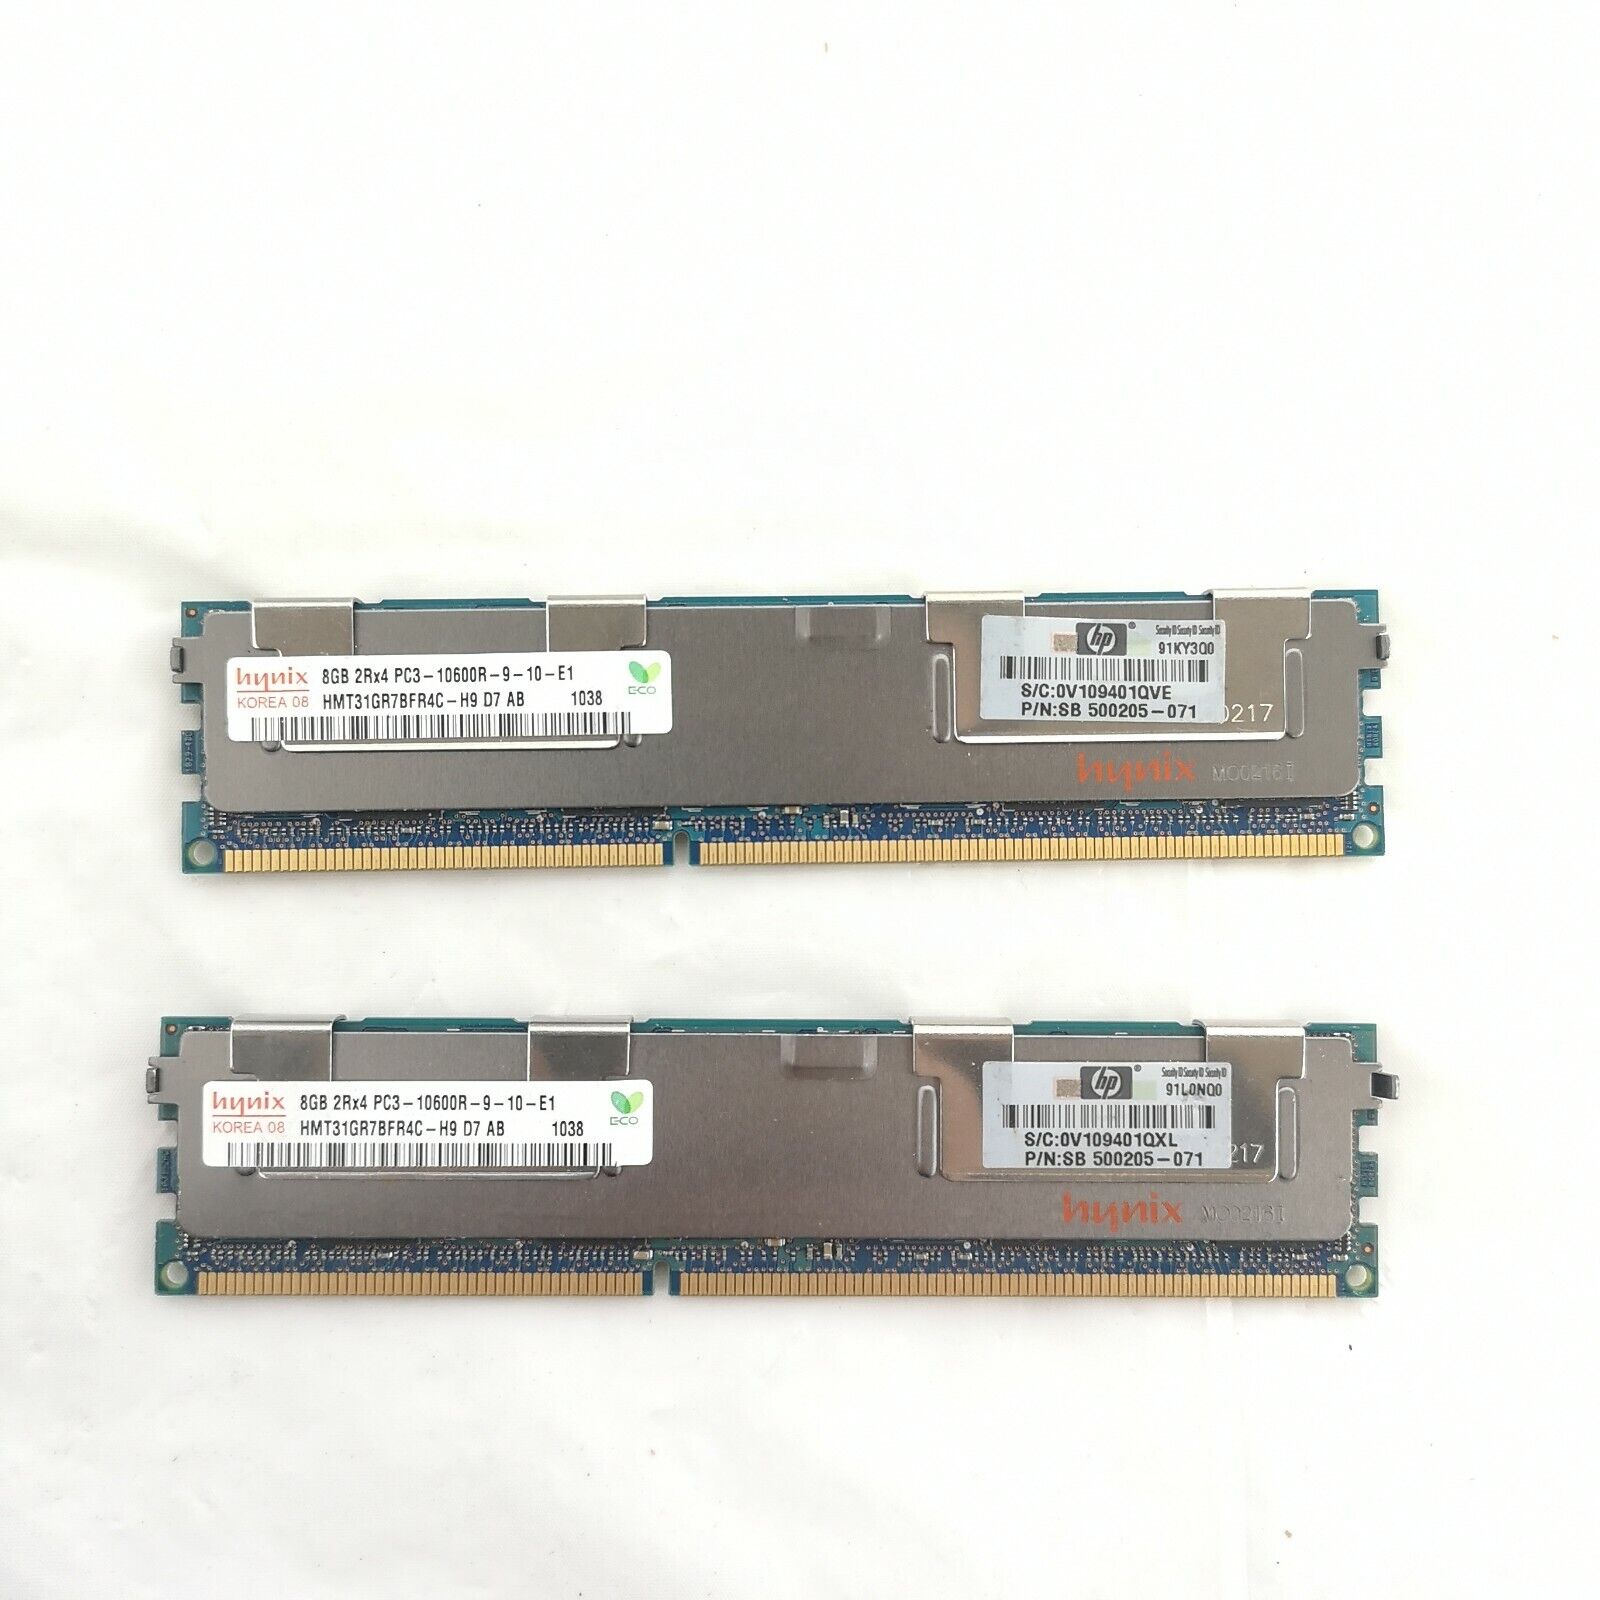 Hynix HMT31GR7BFR4C-H9 8GB 2Rx4 DDR3 PC3-10600R RAM